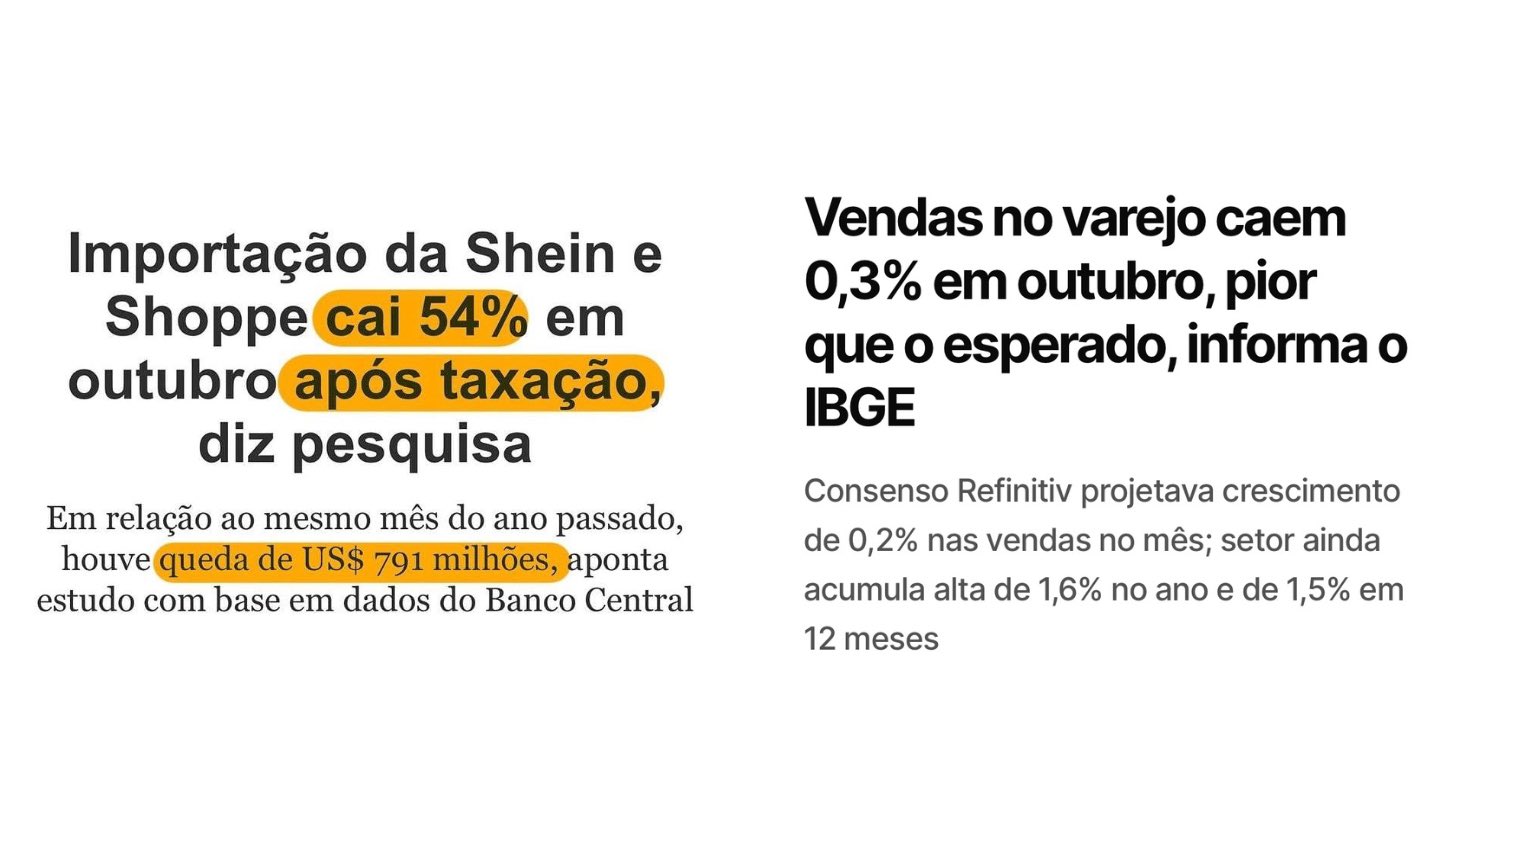 João Pedro C. Motta on X: O Yahoo! Brasil deixou de publicar conteúdos. O  site tinha 85 milhões de visitas por mês e resolveu tirar tudo do ar e  redirecionar pra home